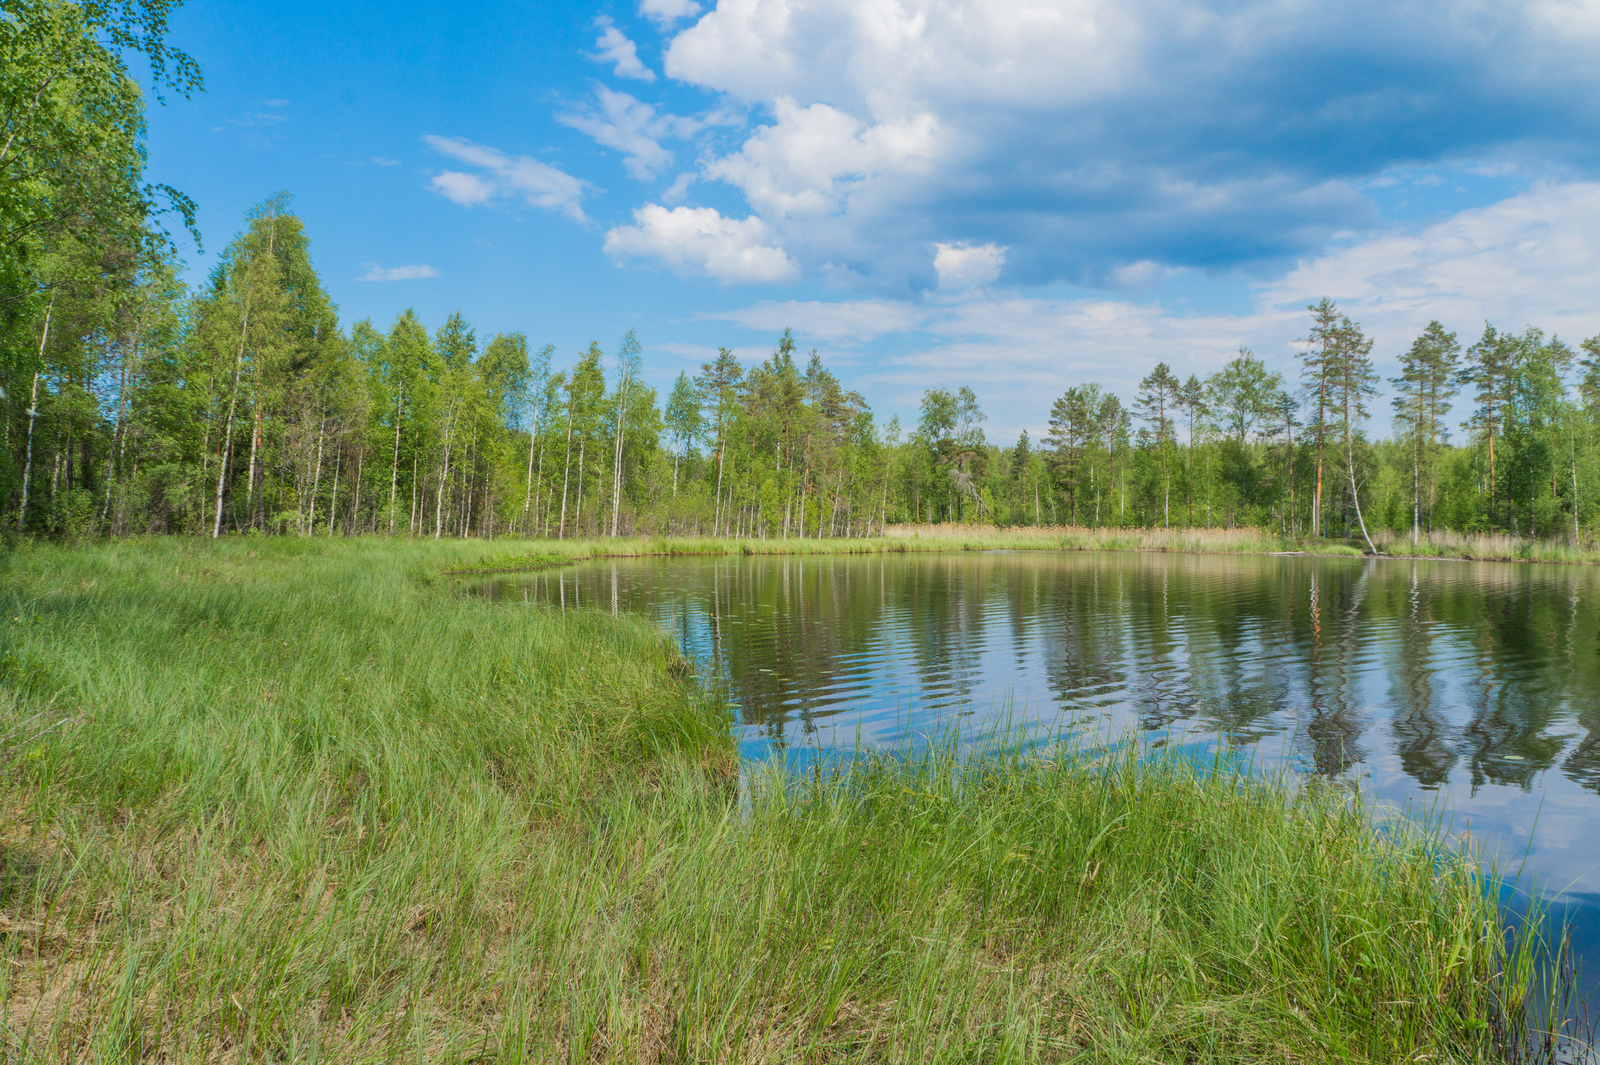 Kesäinen metsä ja poutapilvinen taivas heijastuvat järven pintaan. Etualalla on vesikasveja.